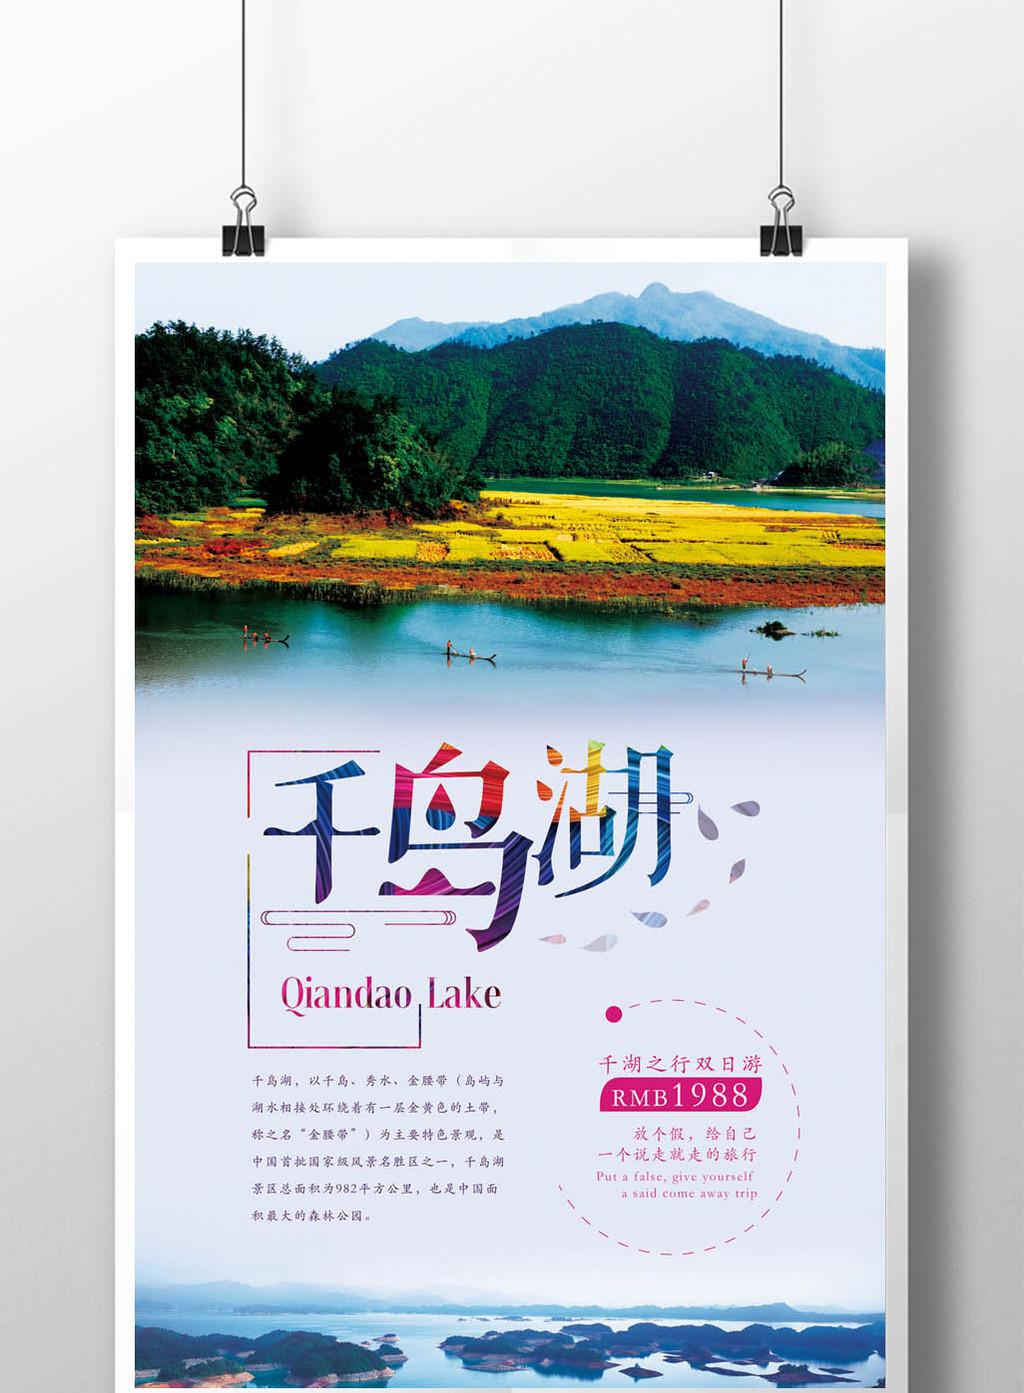 简约千岛湖旅游宣传海报模板下载_3543x5315像素_【包